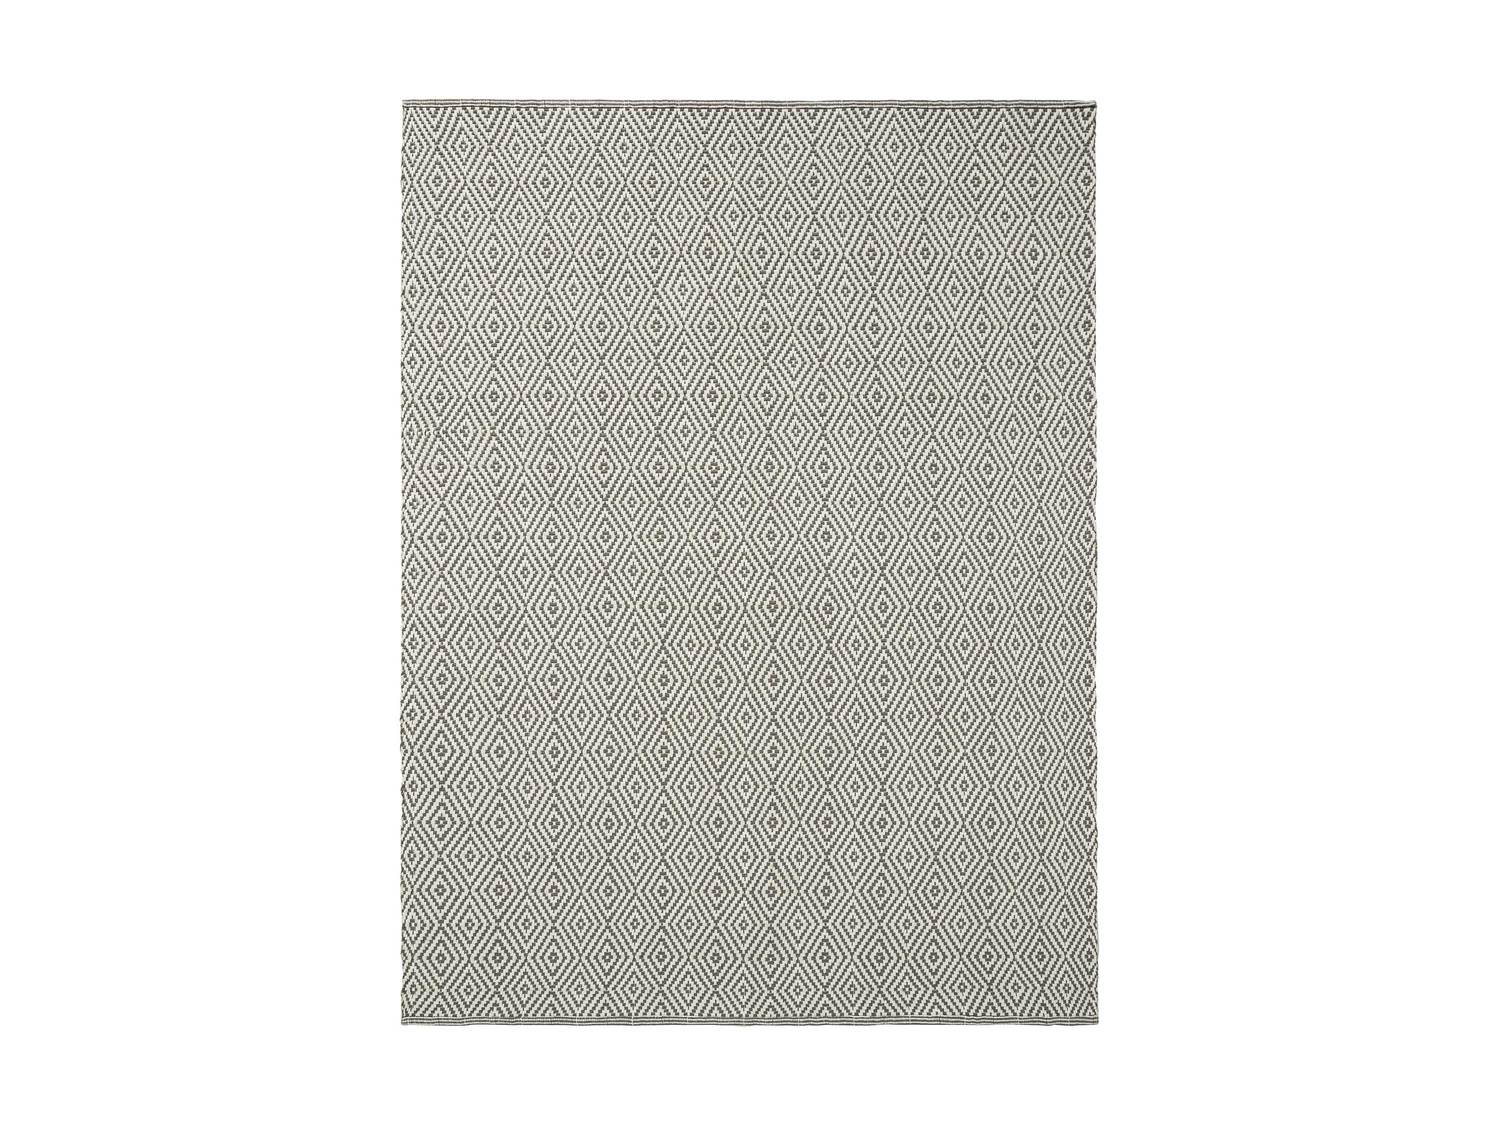 Dwustronny dywan Meradiso, cena 74,90 PLN  
-  100% bawełny
150 x 200 cm